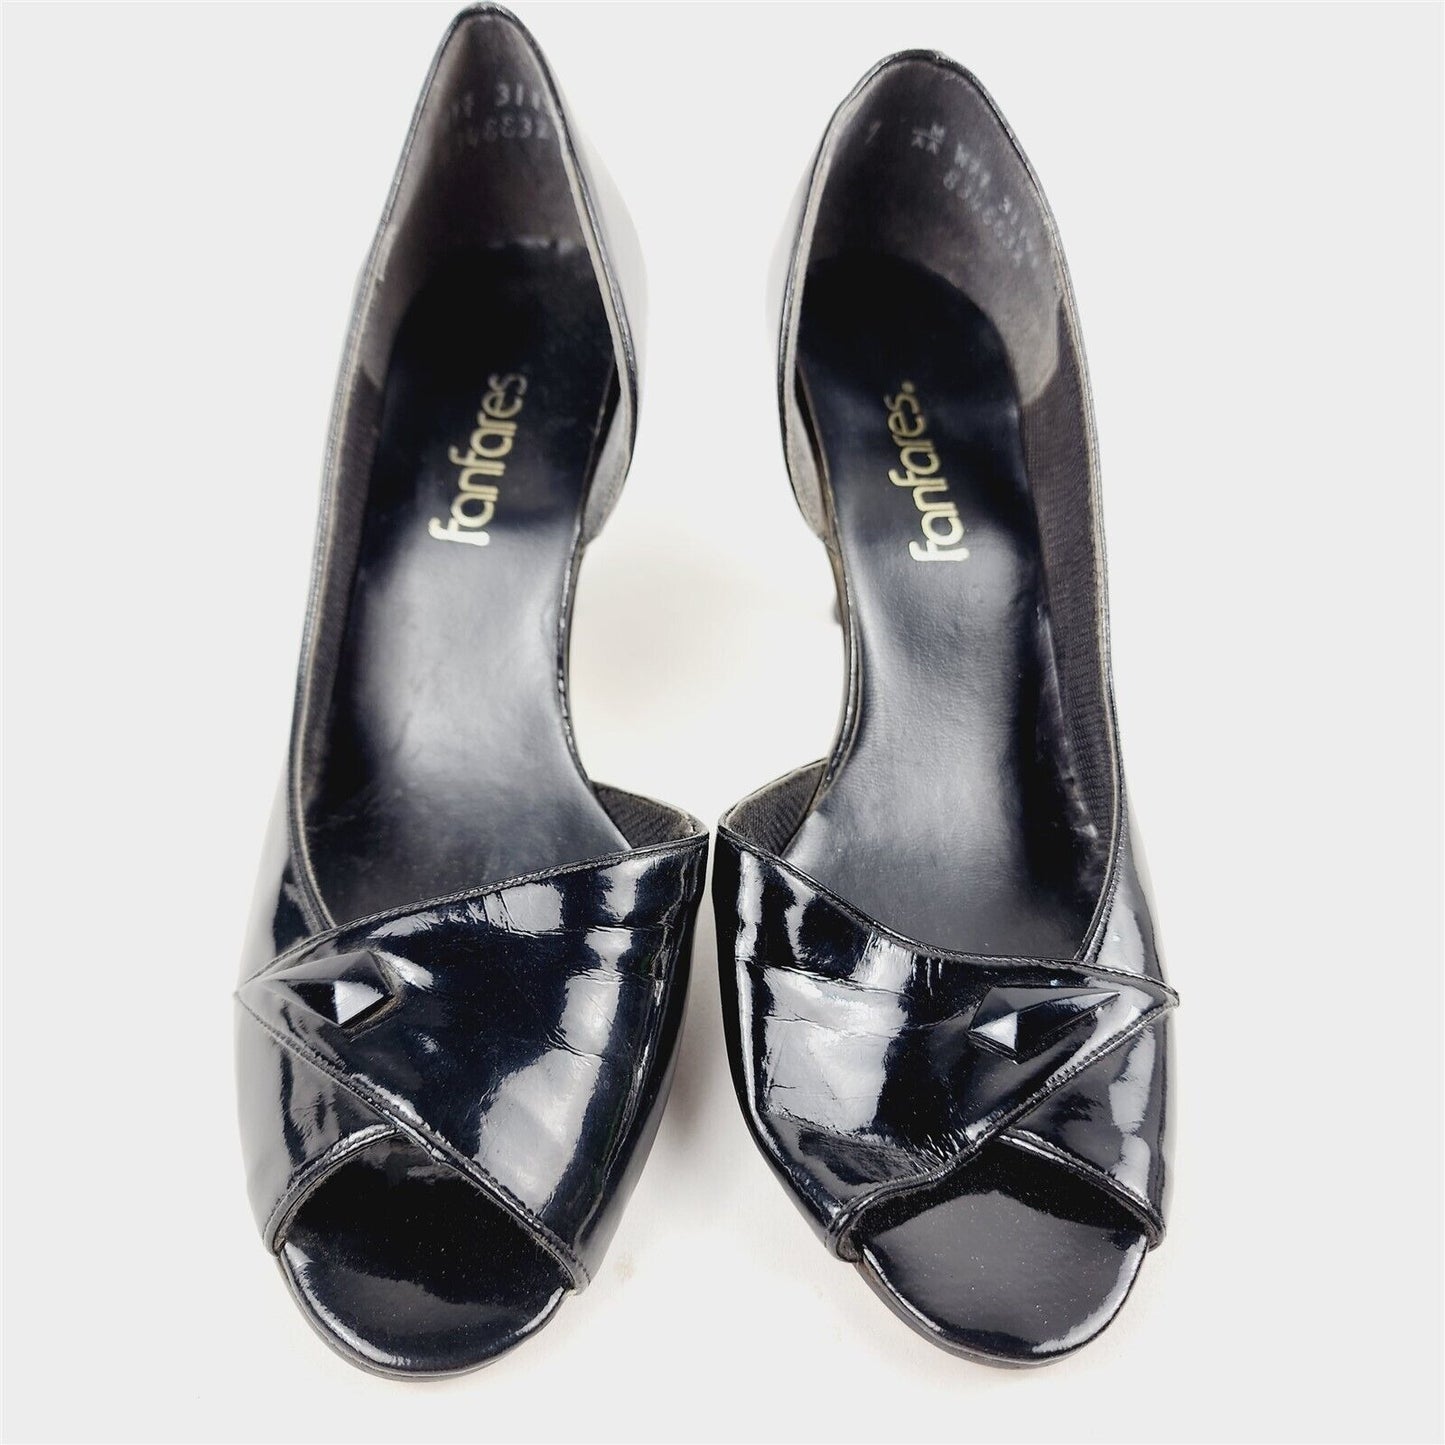 Vintage FanFares Black Peep Toe Pumps Heels Shoes Womens Size 7